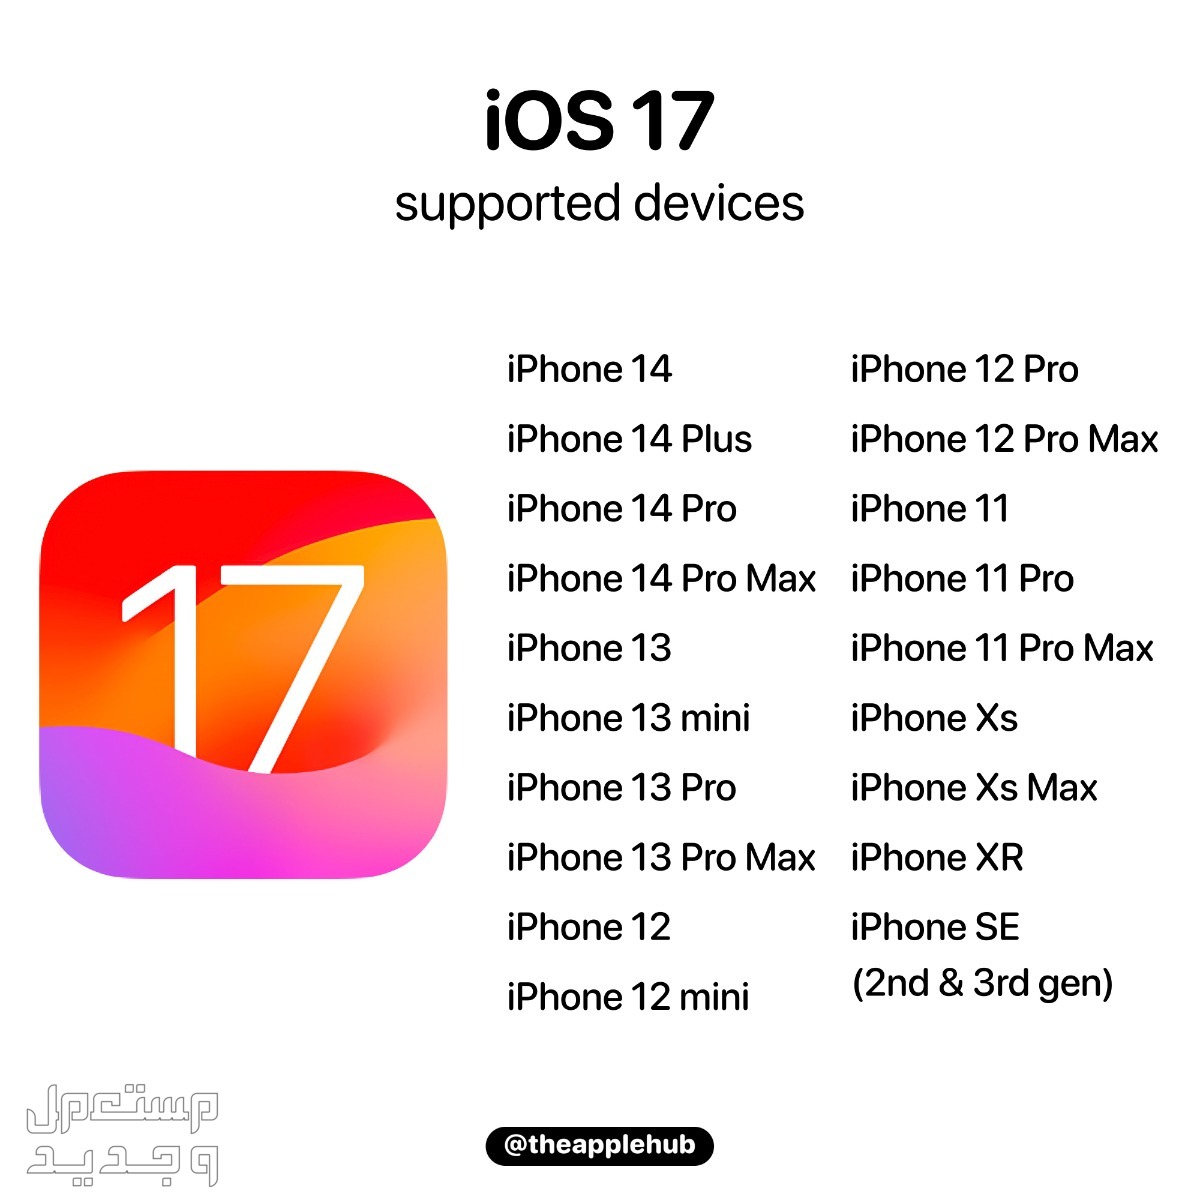 نظام iOS 17 لهواتف ايفون بمميزات جديدة تعرف عليها في الأردن